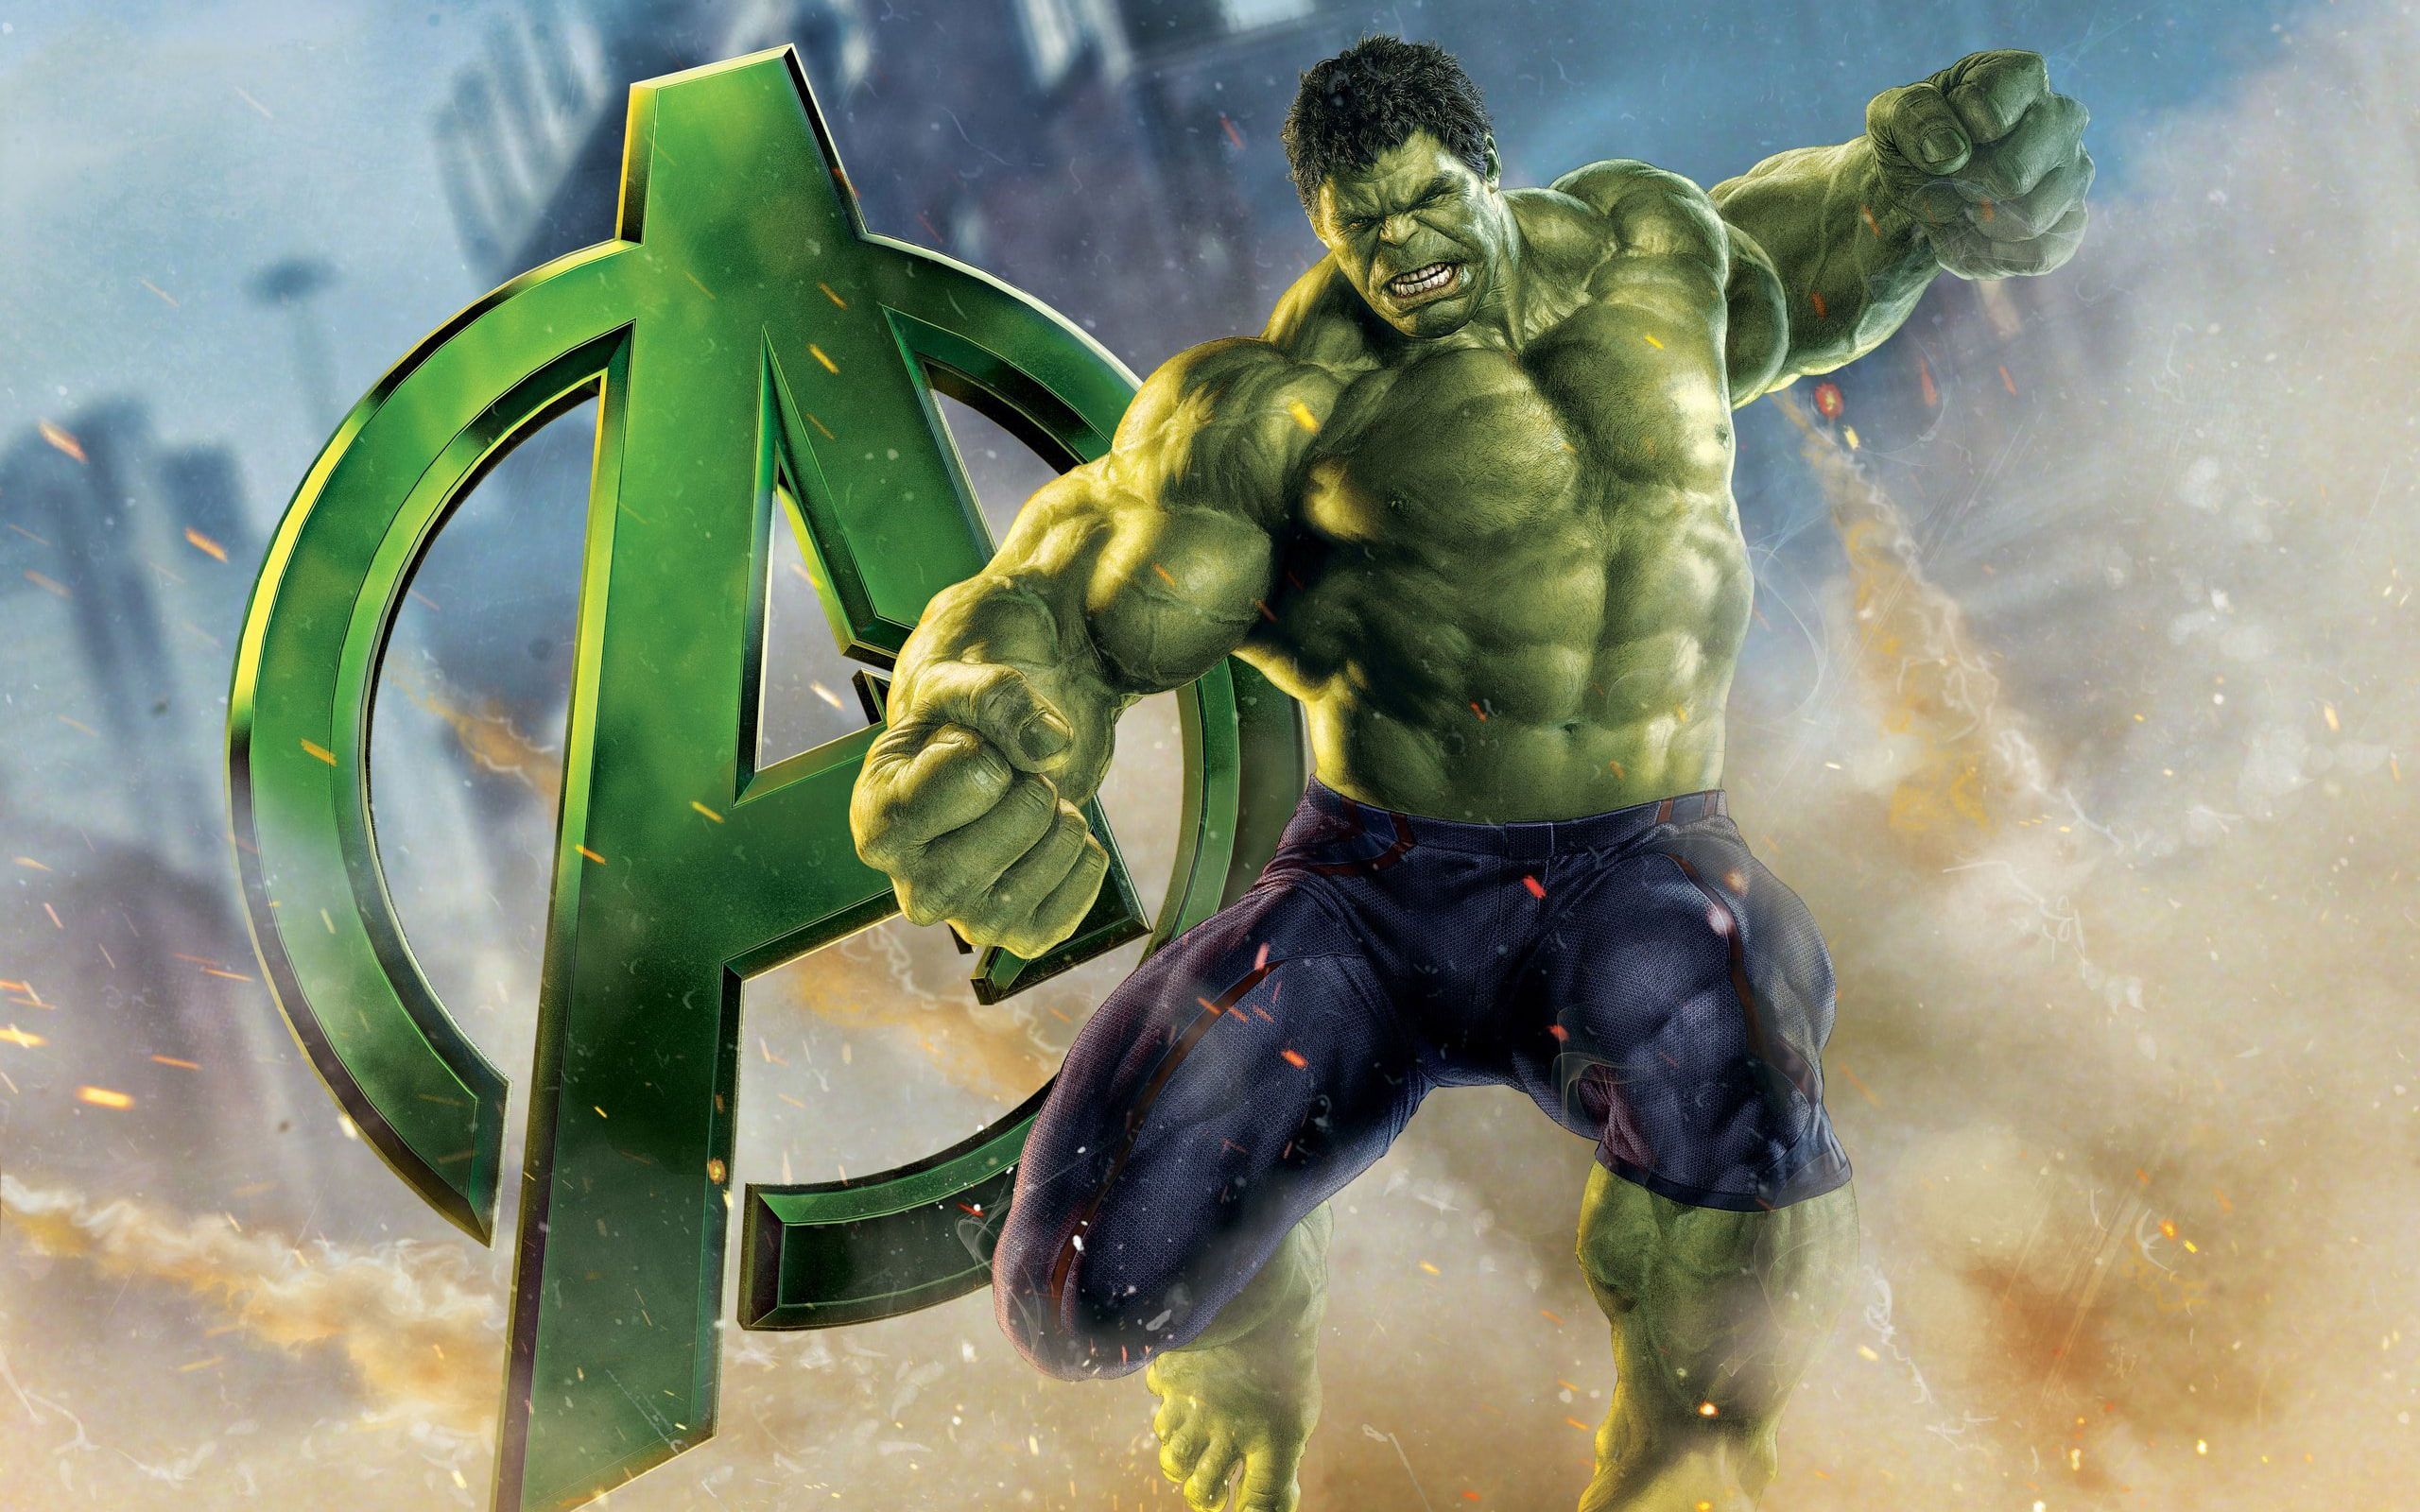 Wallpaper Avengers Hulk, Incredible Hulk Illustration • Wallpaper For You HD Wallpaper For Desktop & Mobile